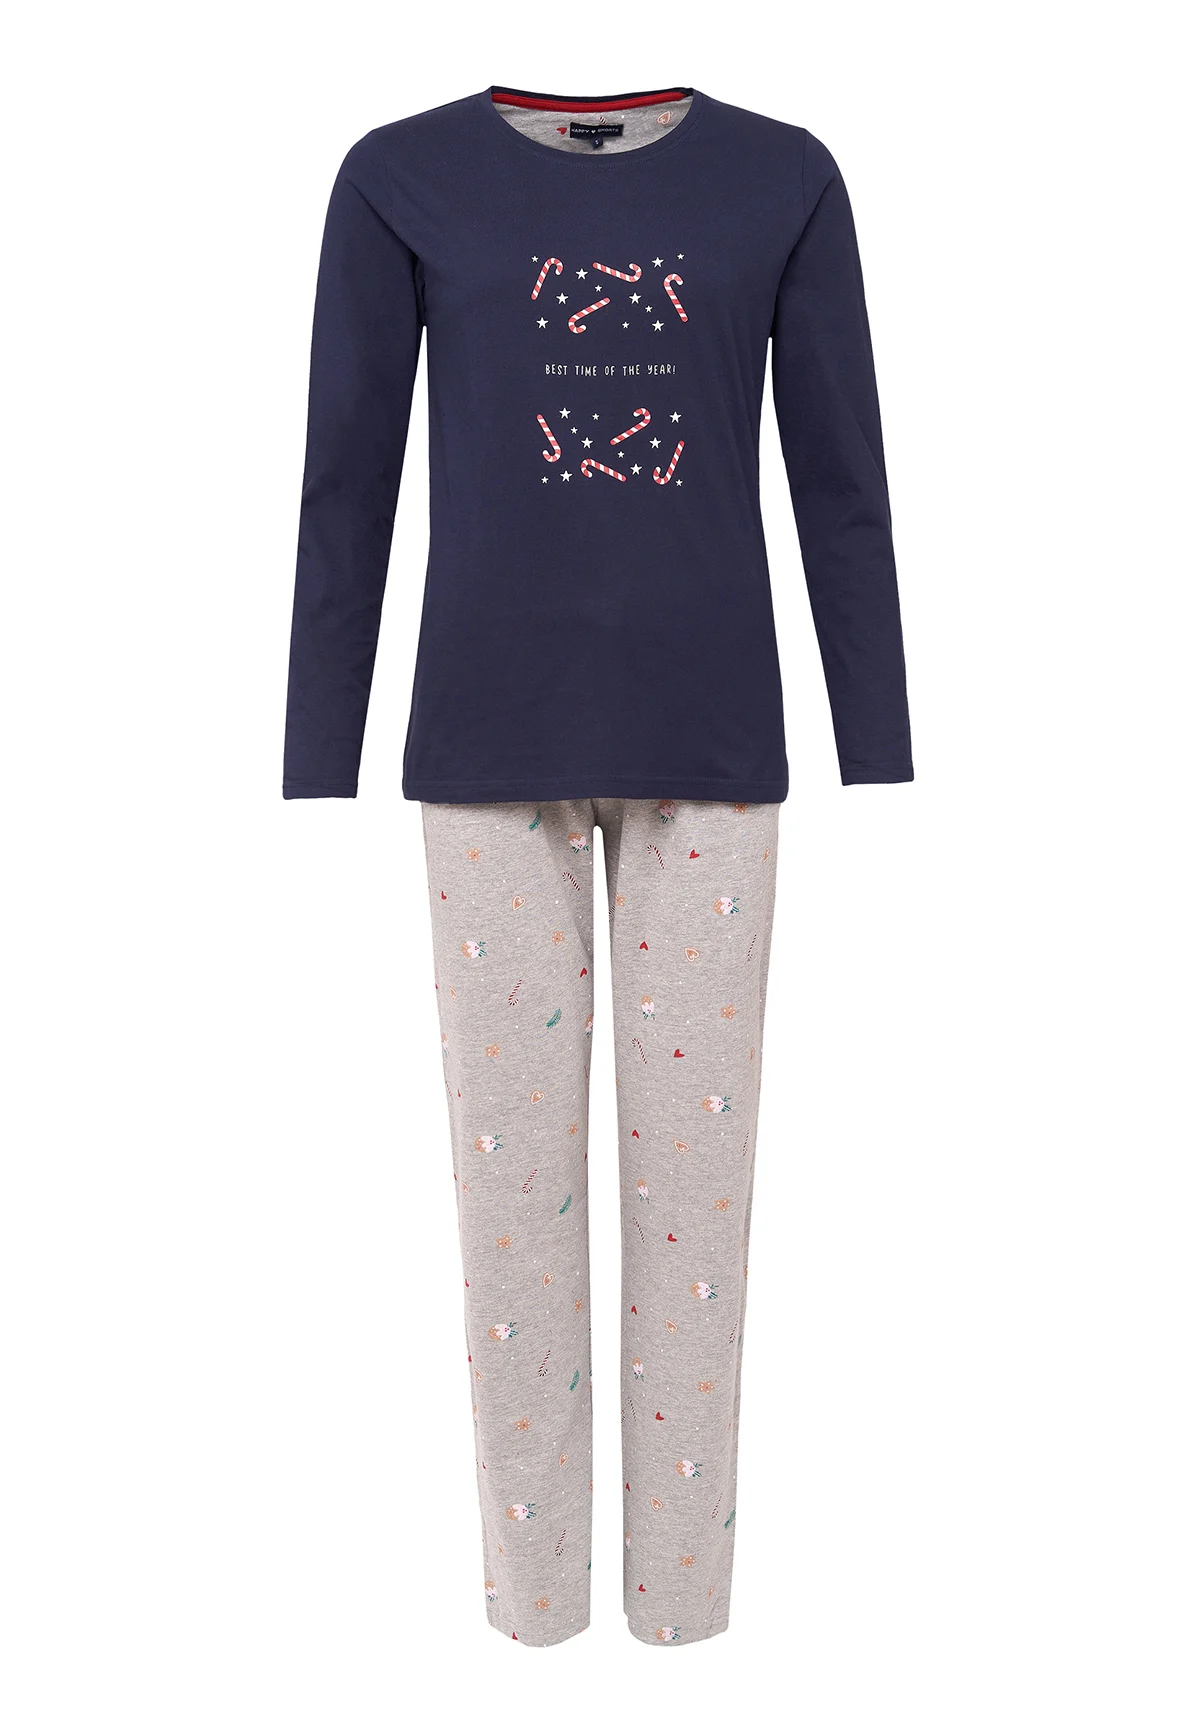 Afbeelding van Happy Shorts Dames kerst pyjama set shirt donkerblauw met zuurstokken + grijze broek met print